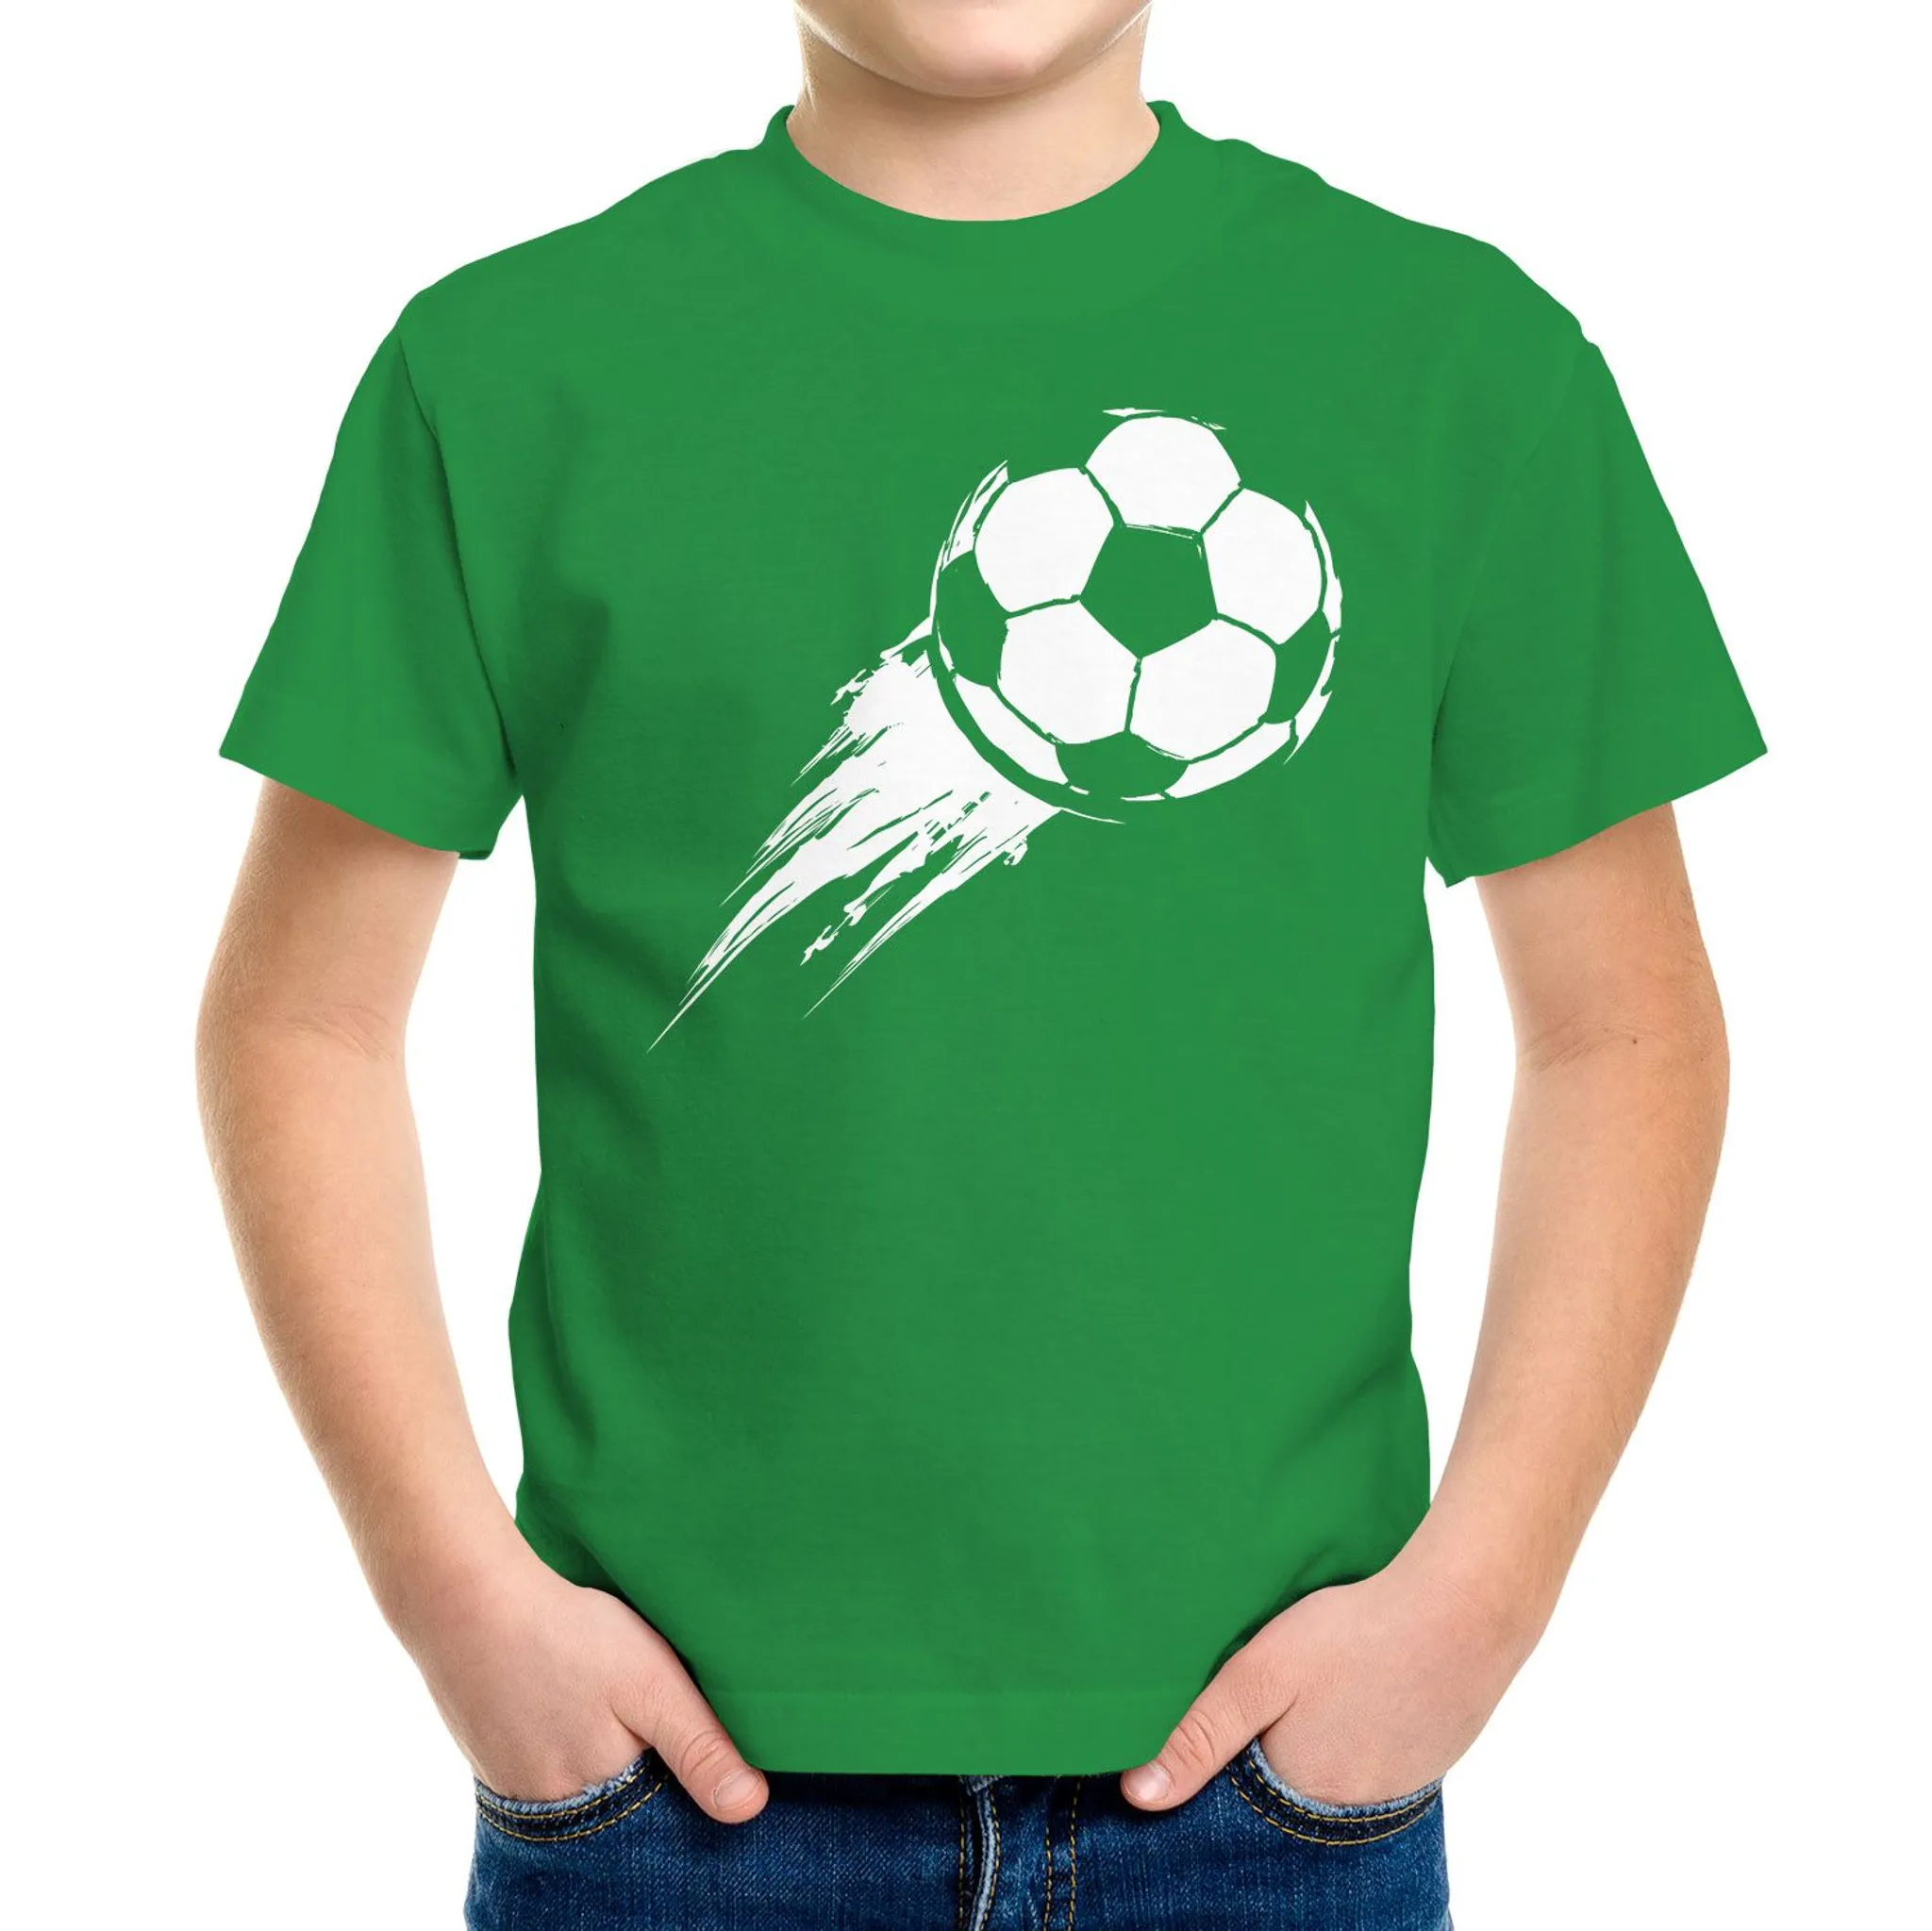 Kinder T-Shirt Fußball-Motiv Jungen